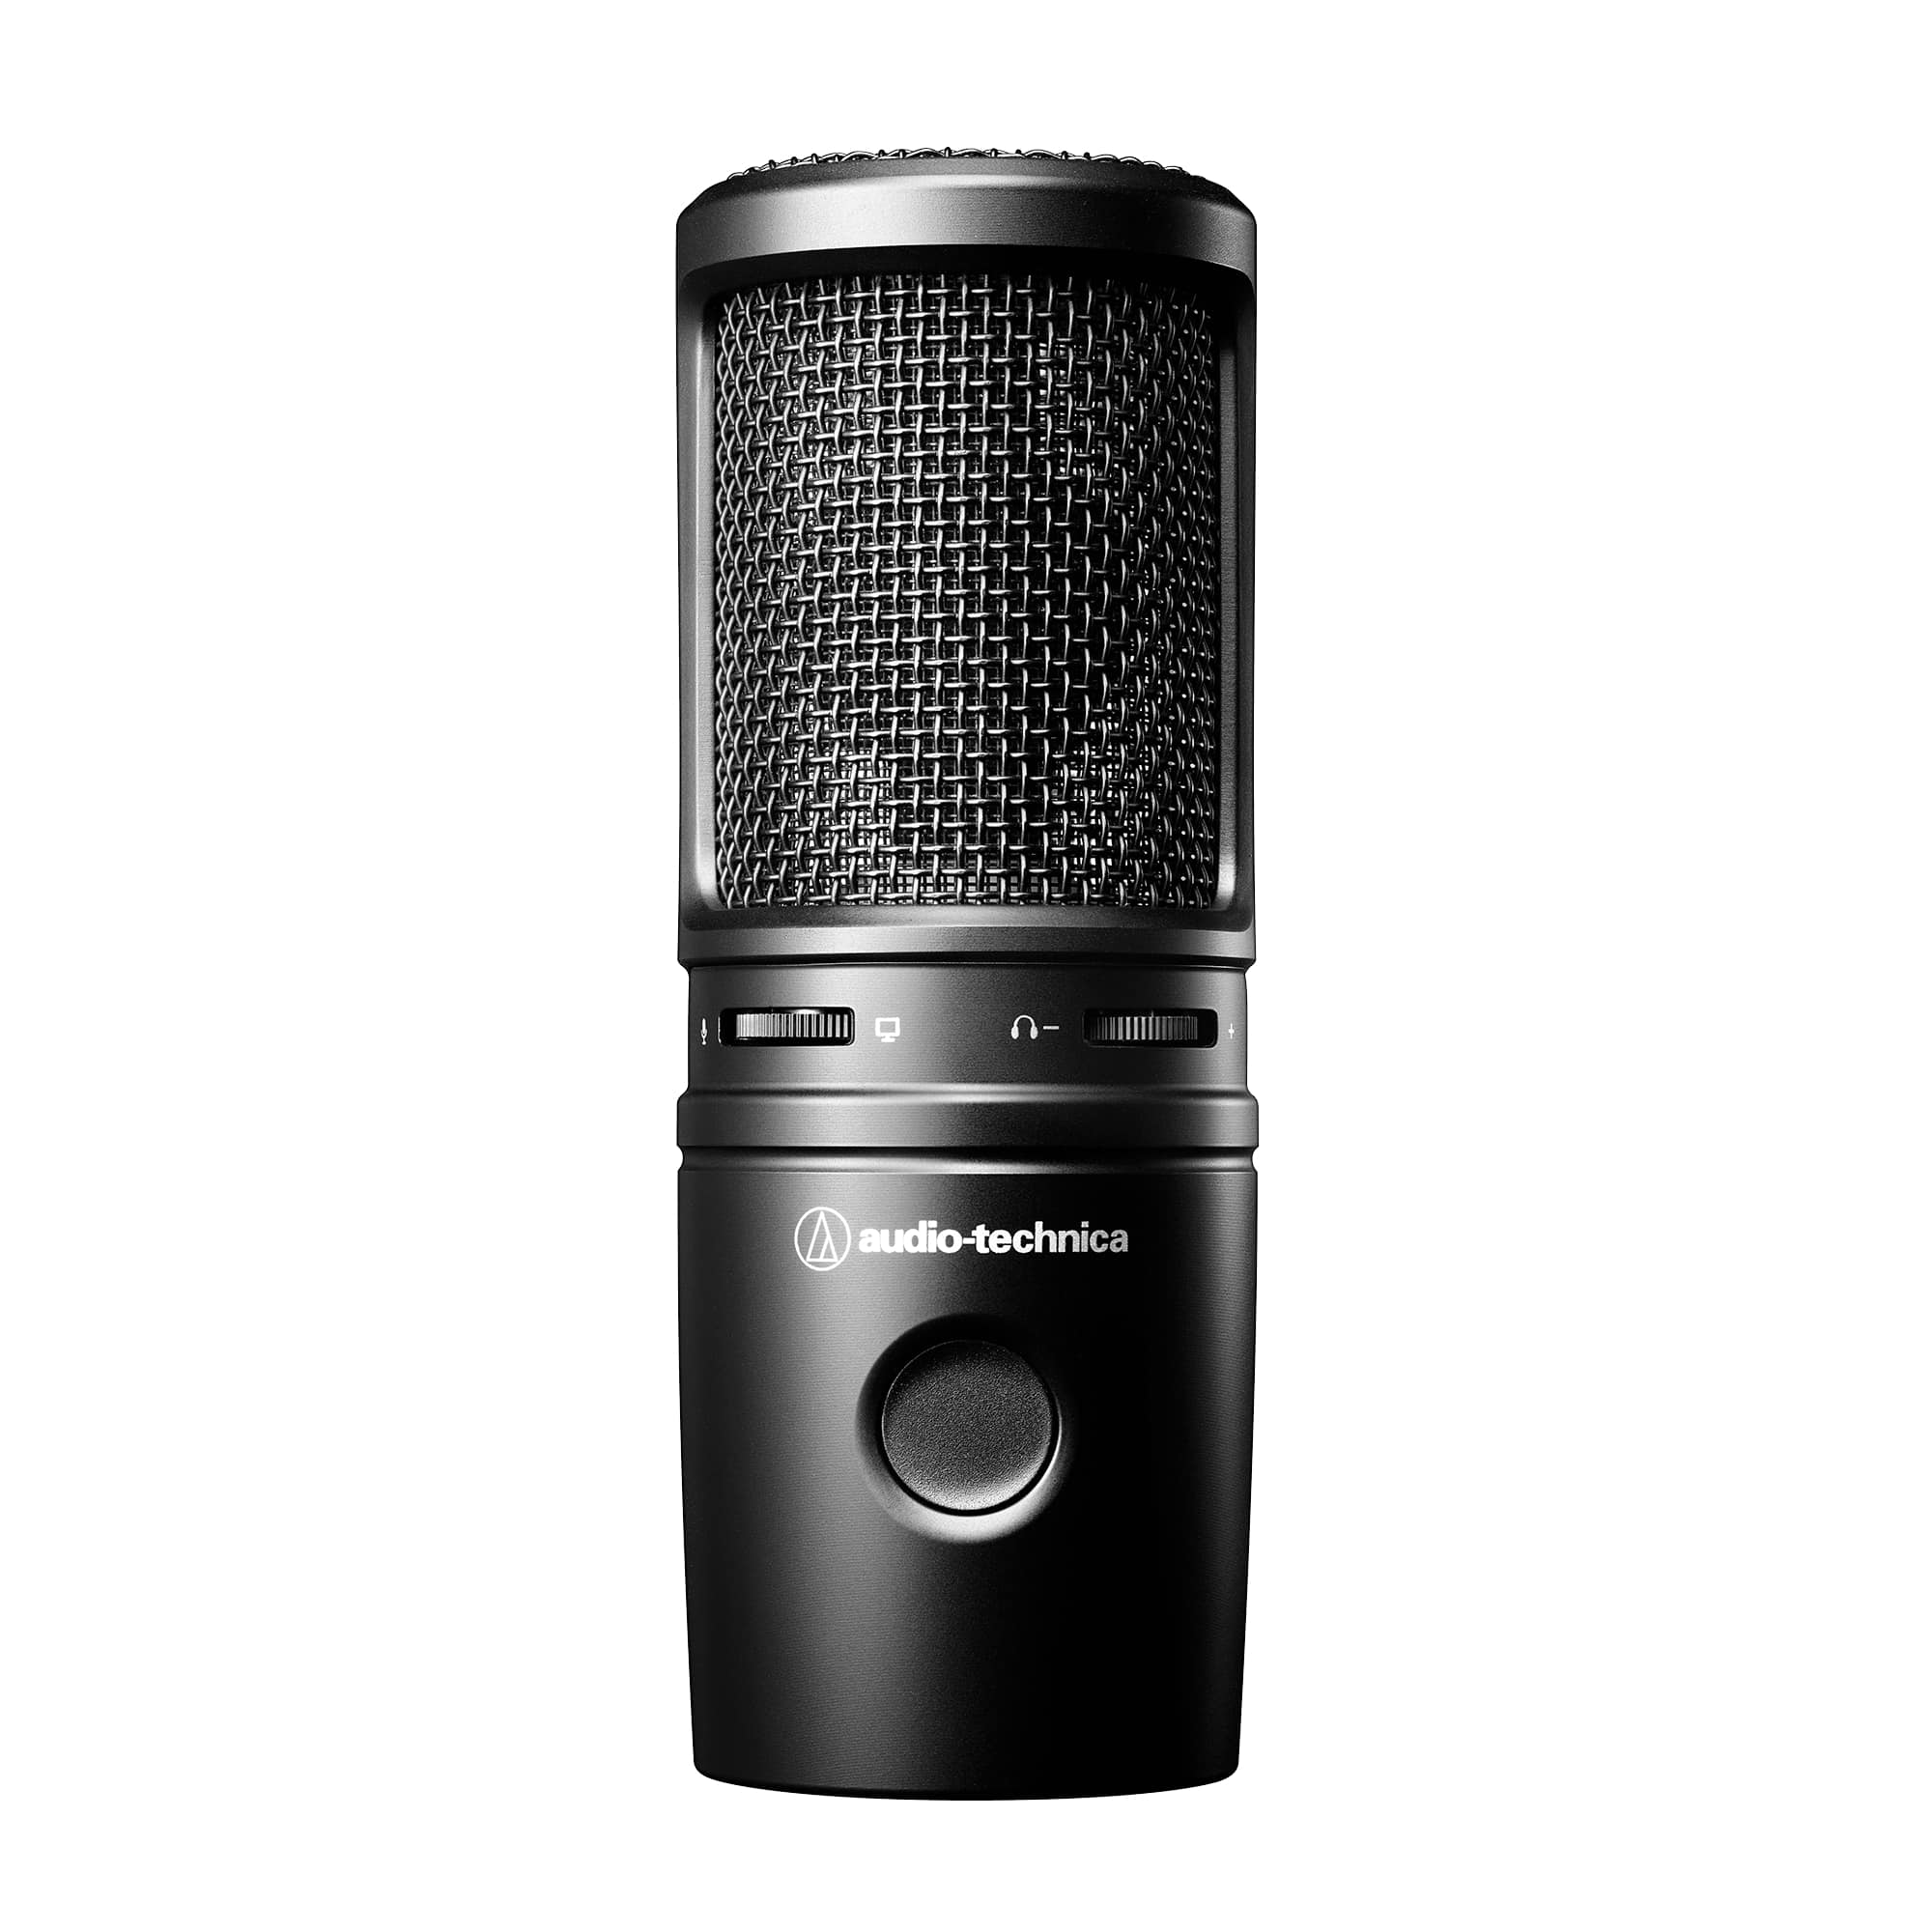 Студийные микрофоны Audio Technica AT2020USBX микрофоны для тв и радио audio technica atr3350